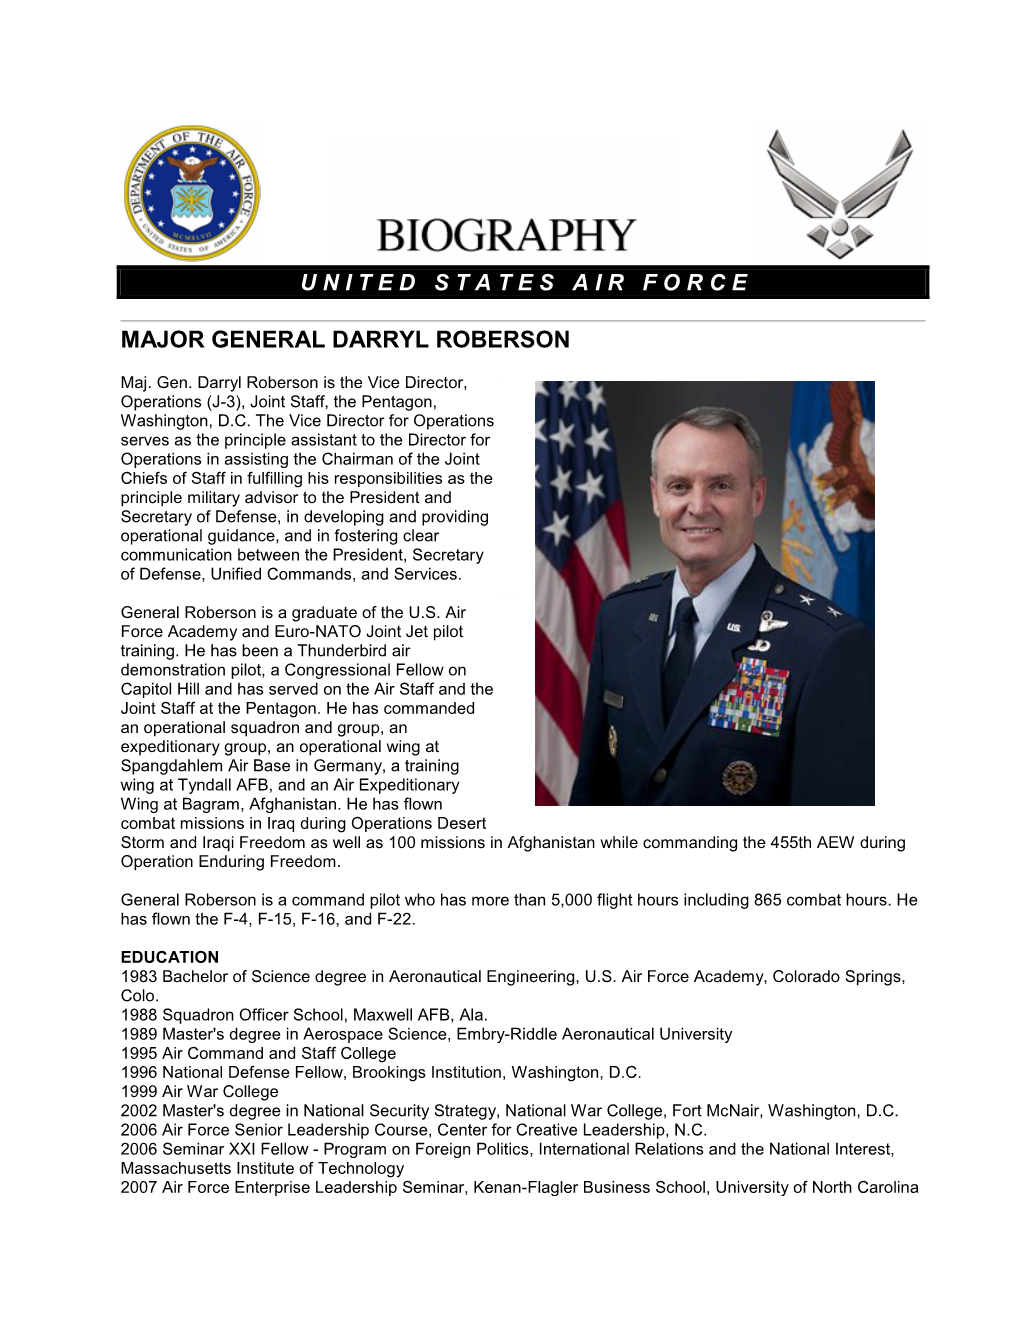 Major General Darryl Roberson